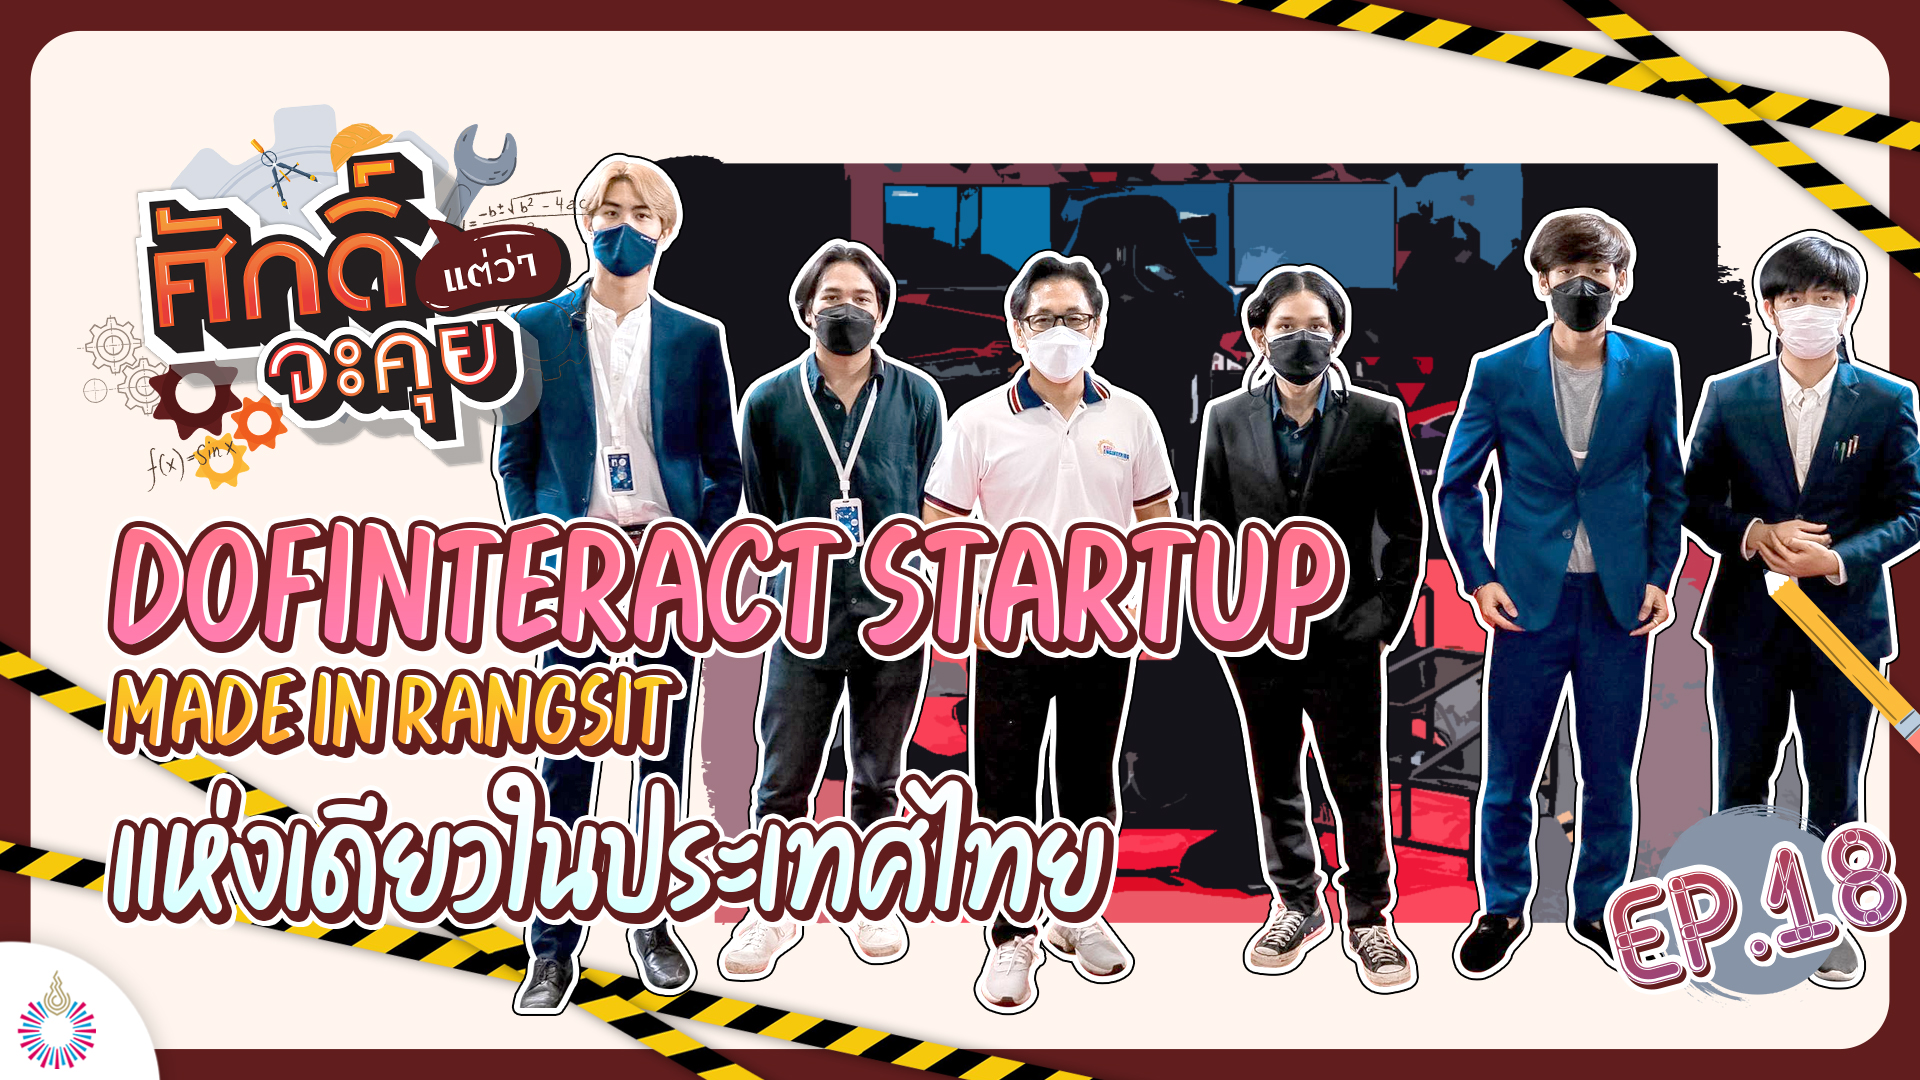 ศักดิ์แต่ว่าจะคุย!! EP.18 | DOFInteract StartUp Made in Rangsit แห่งเดียวในประเทศไทย